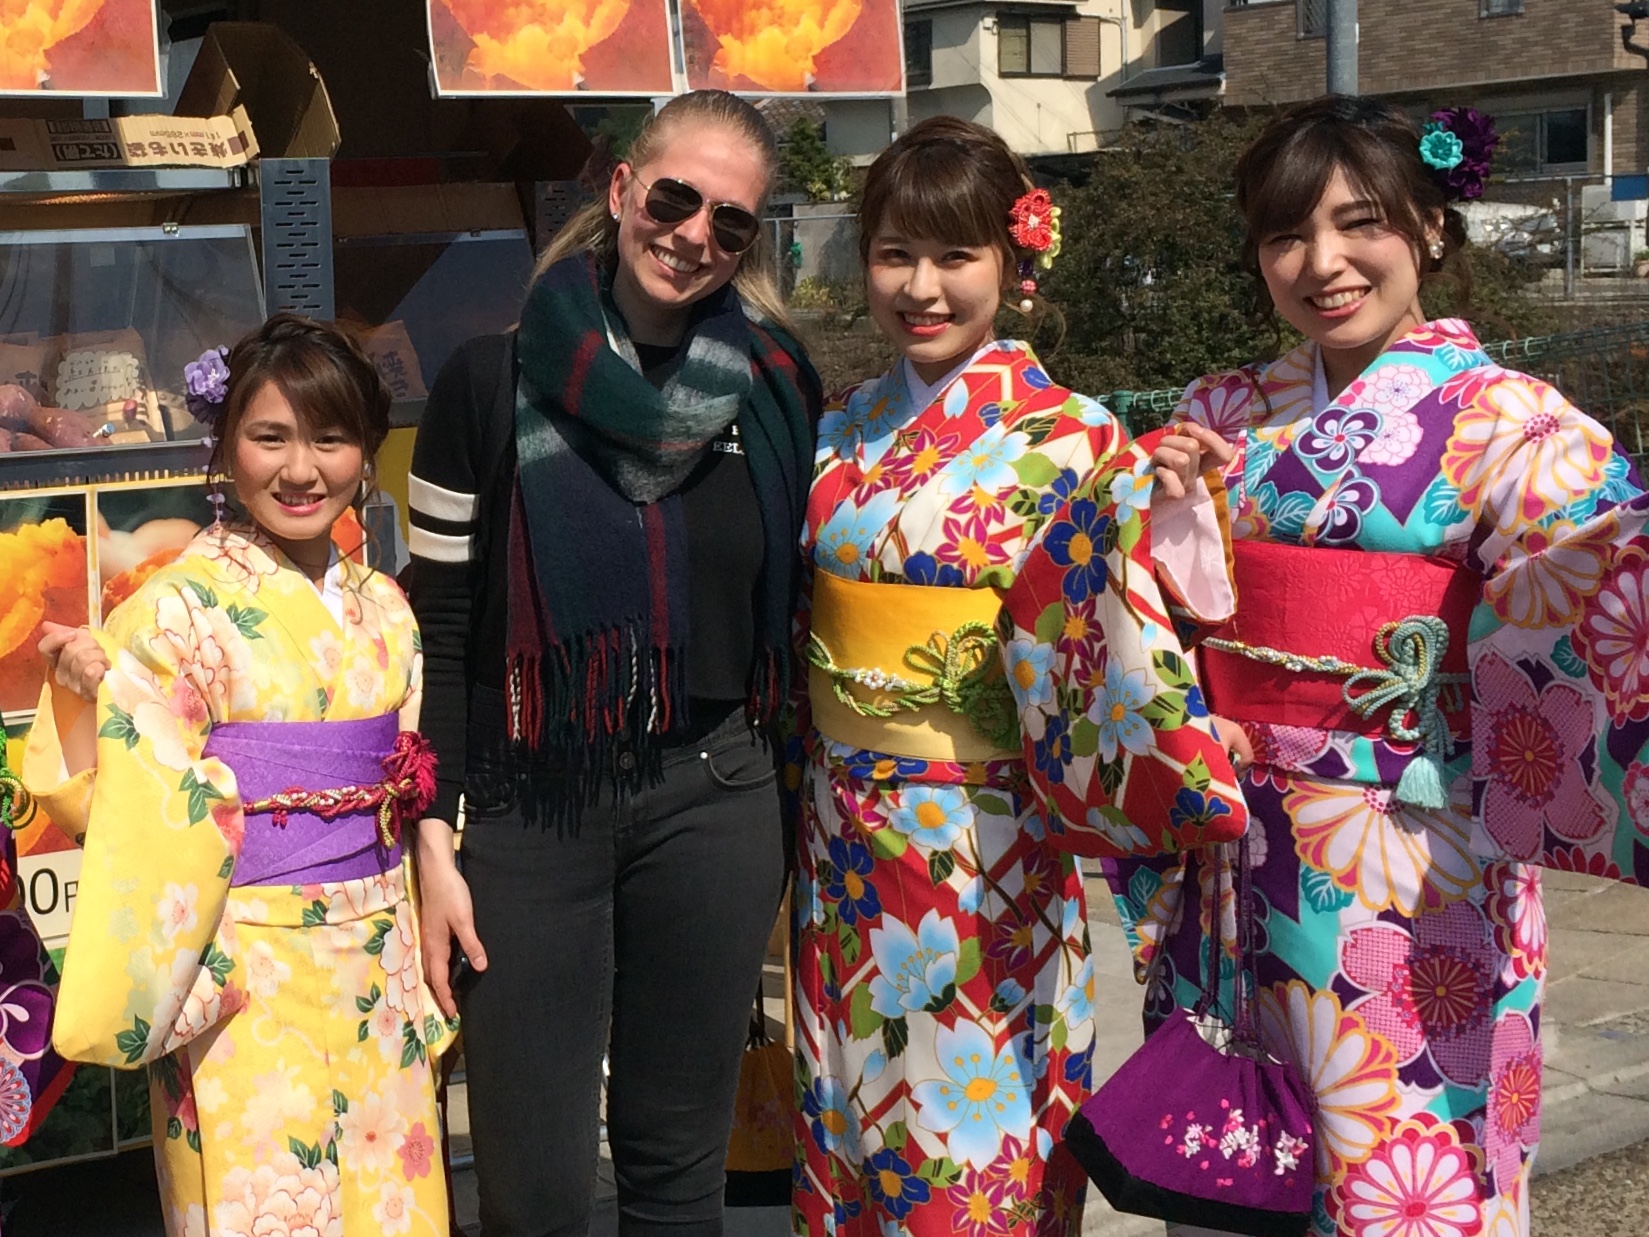 Touristen, die sich einen Tag mal wie eine "Geisha" bzw. "Maiko" (Geisha-Auszubildende) kleiden wollten <3 